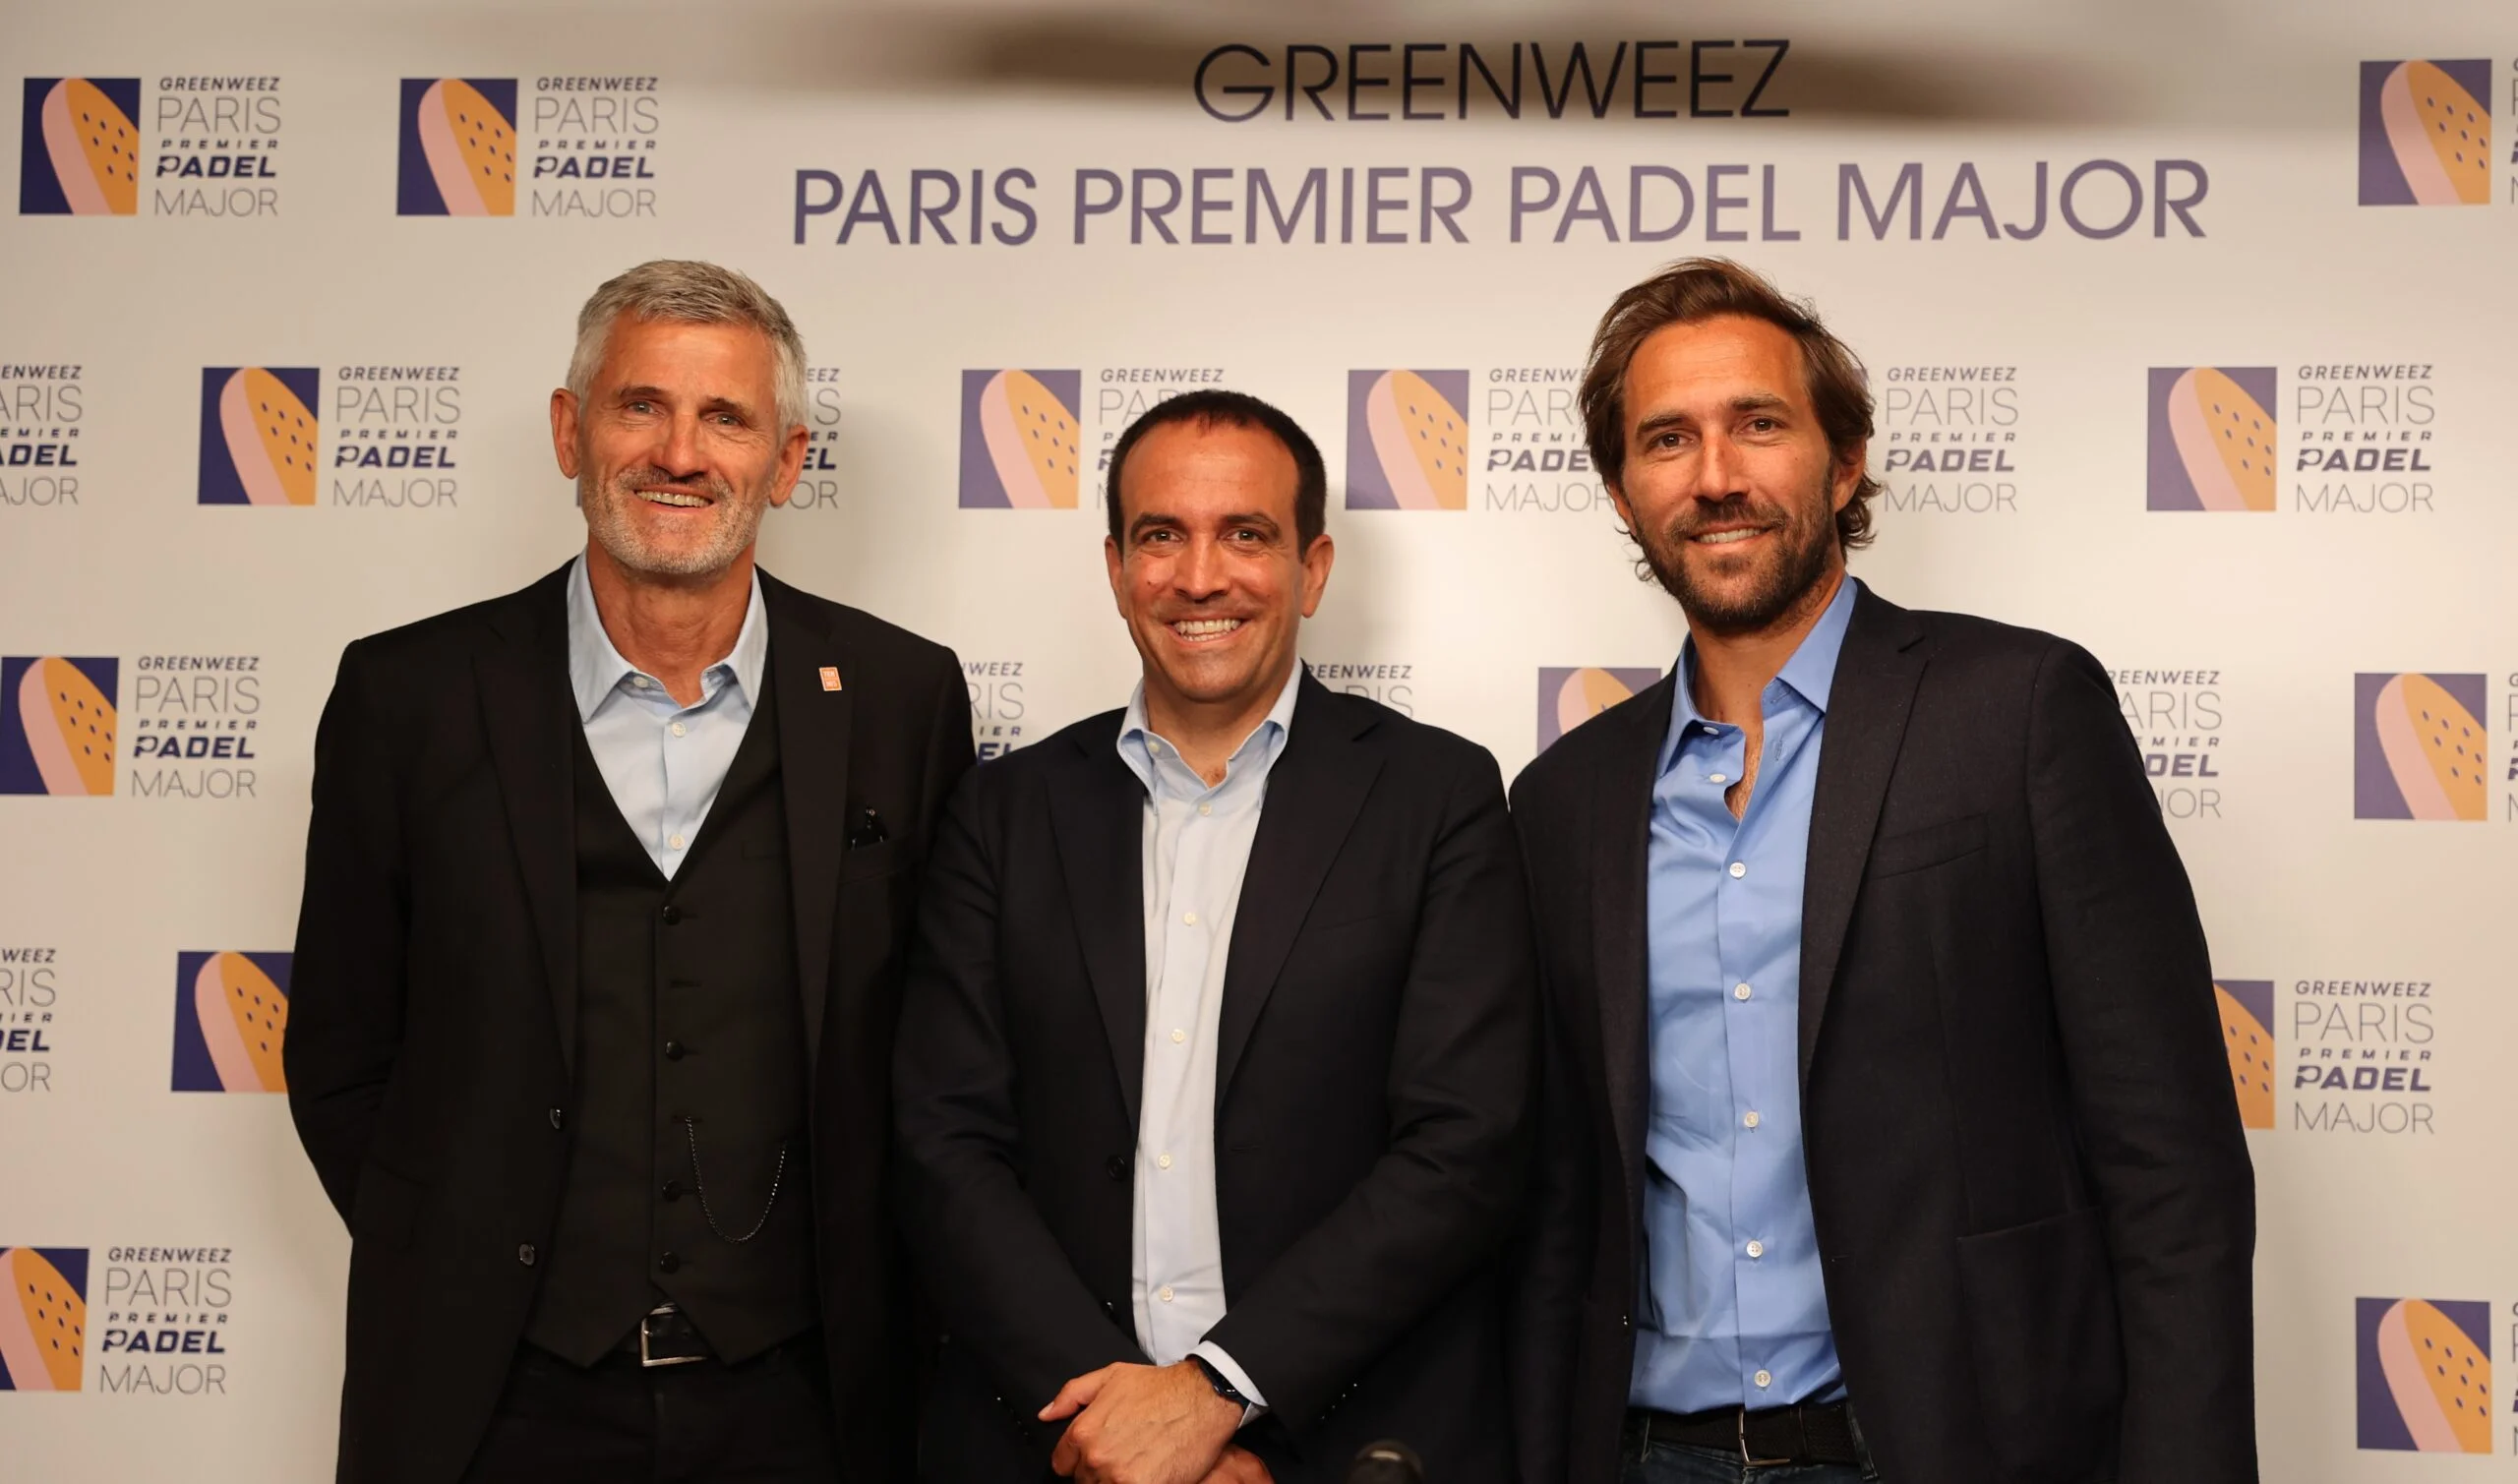 Lo stadio Roland-Garros pronto ad accogliere il Greenweez Paris Premier Padel Major